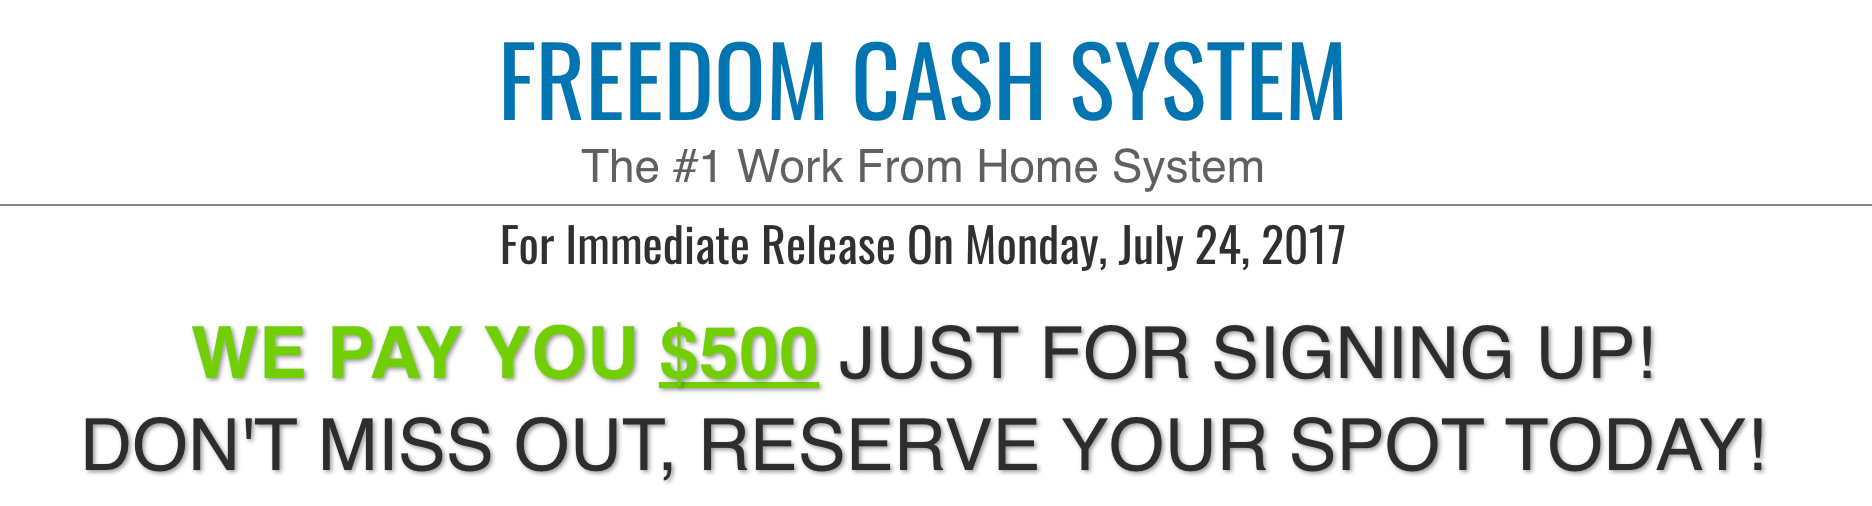 Freedom Cash System cash reward